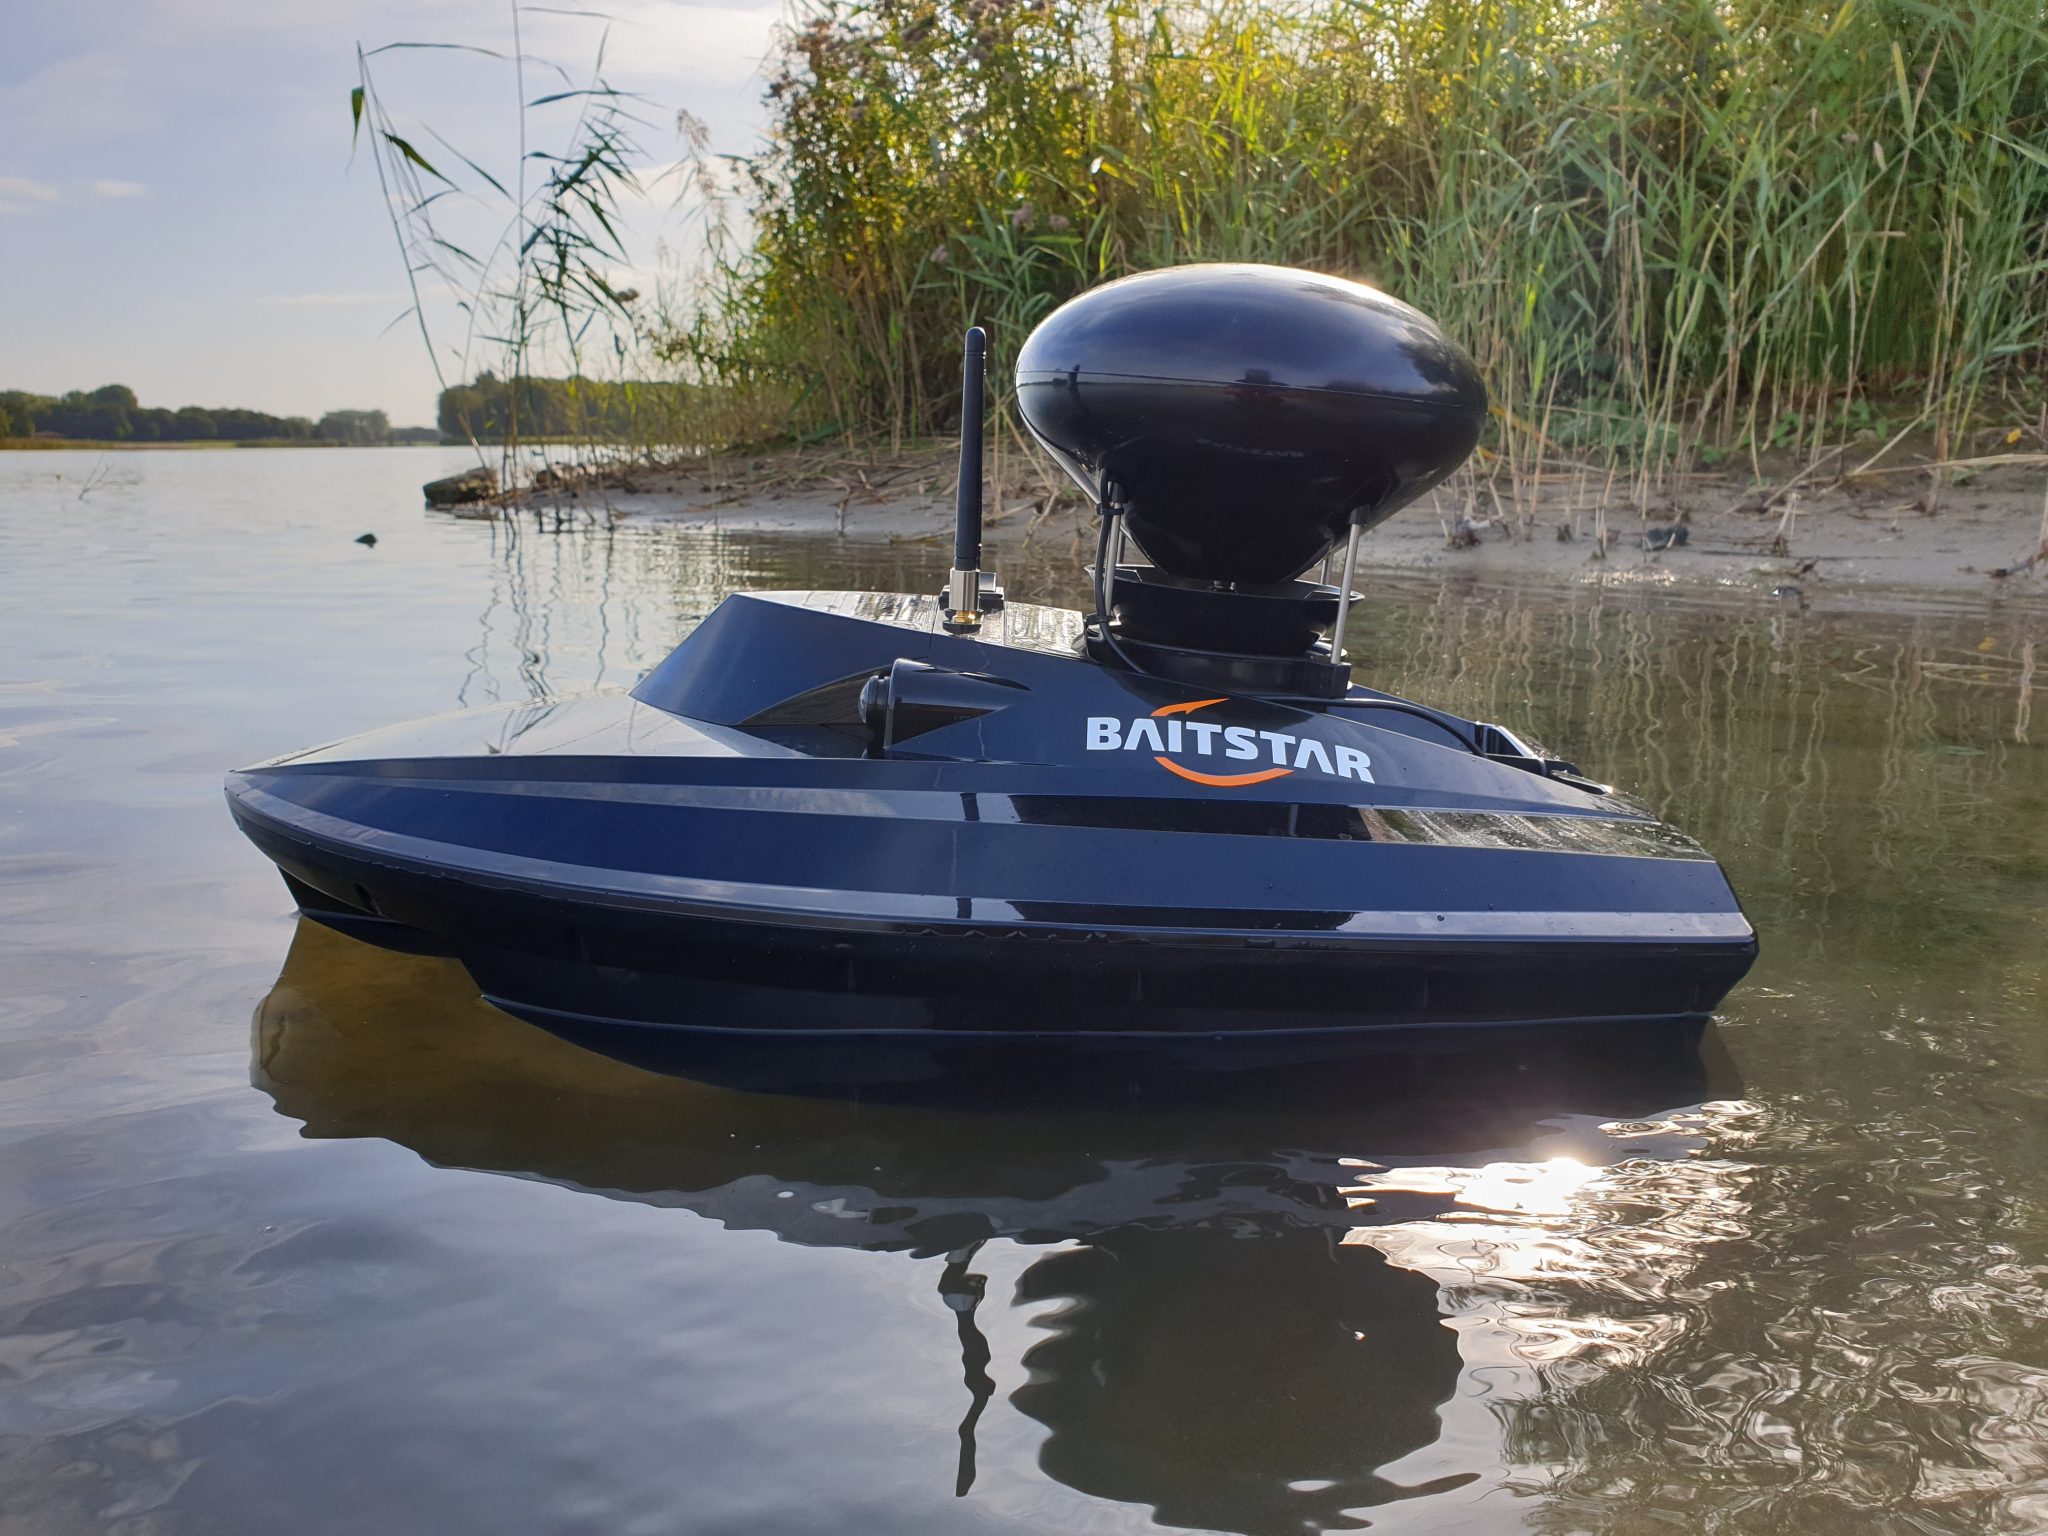 Köderboot: Ein Boot, das für Angeln und Fischen geeignet ist 